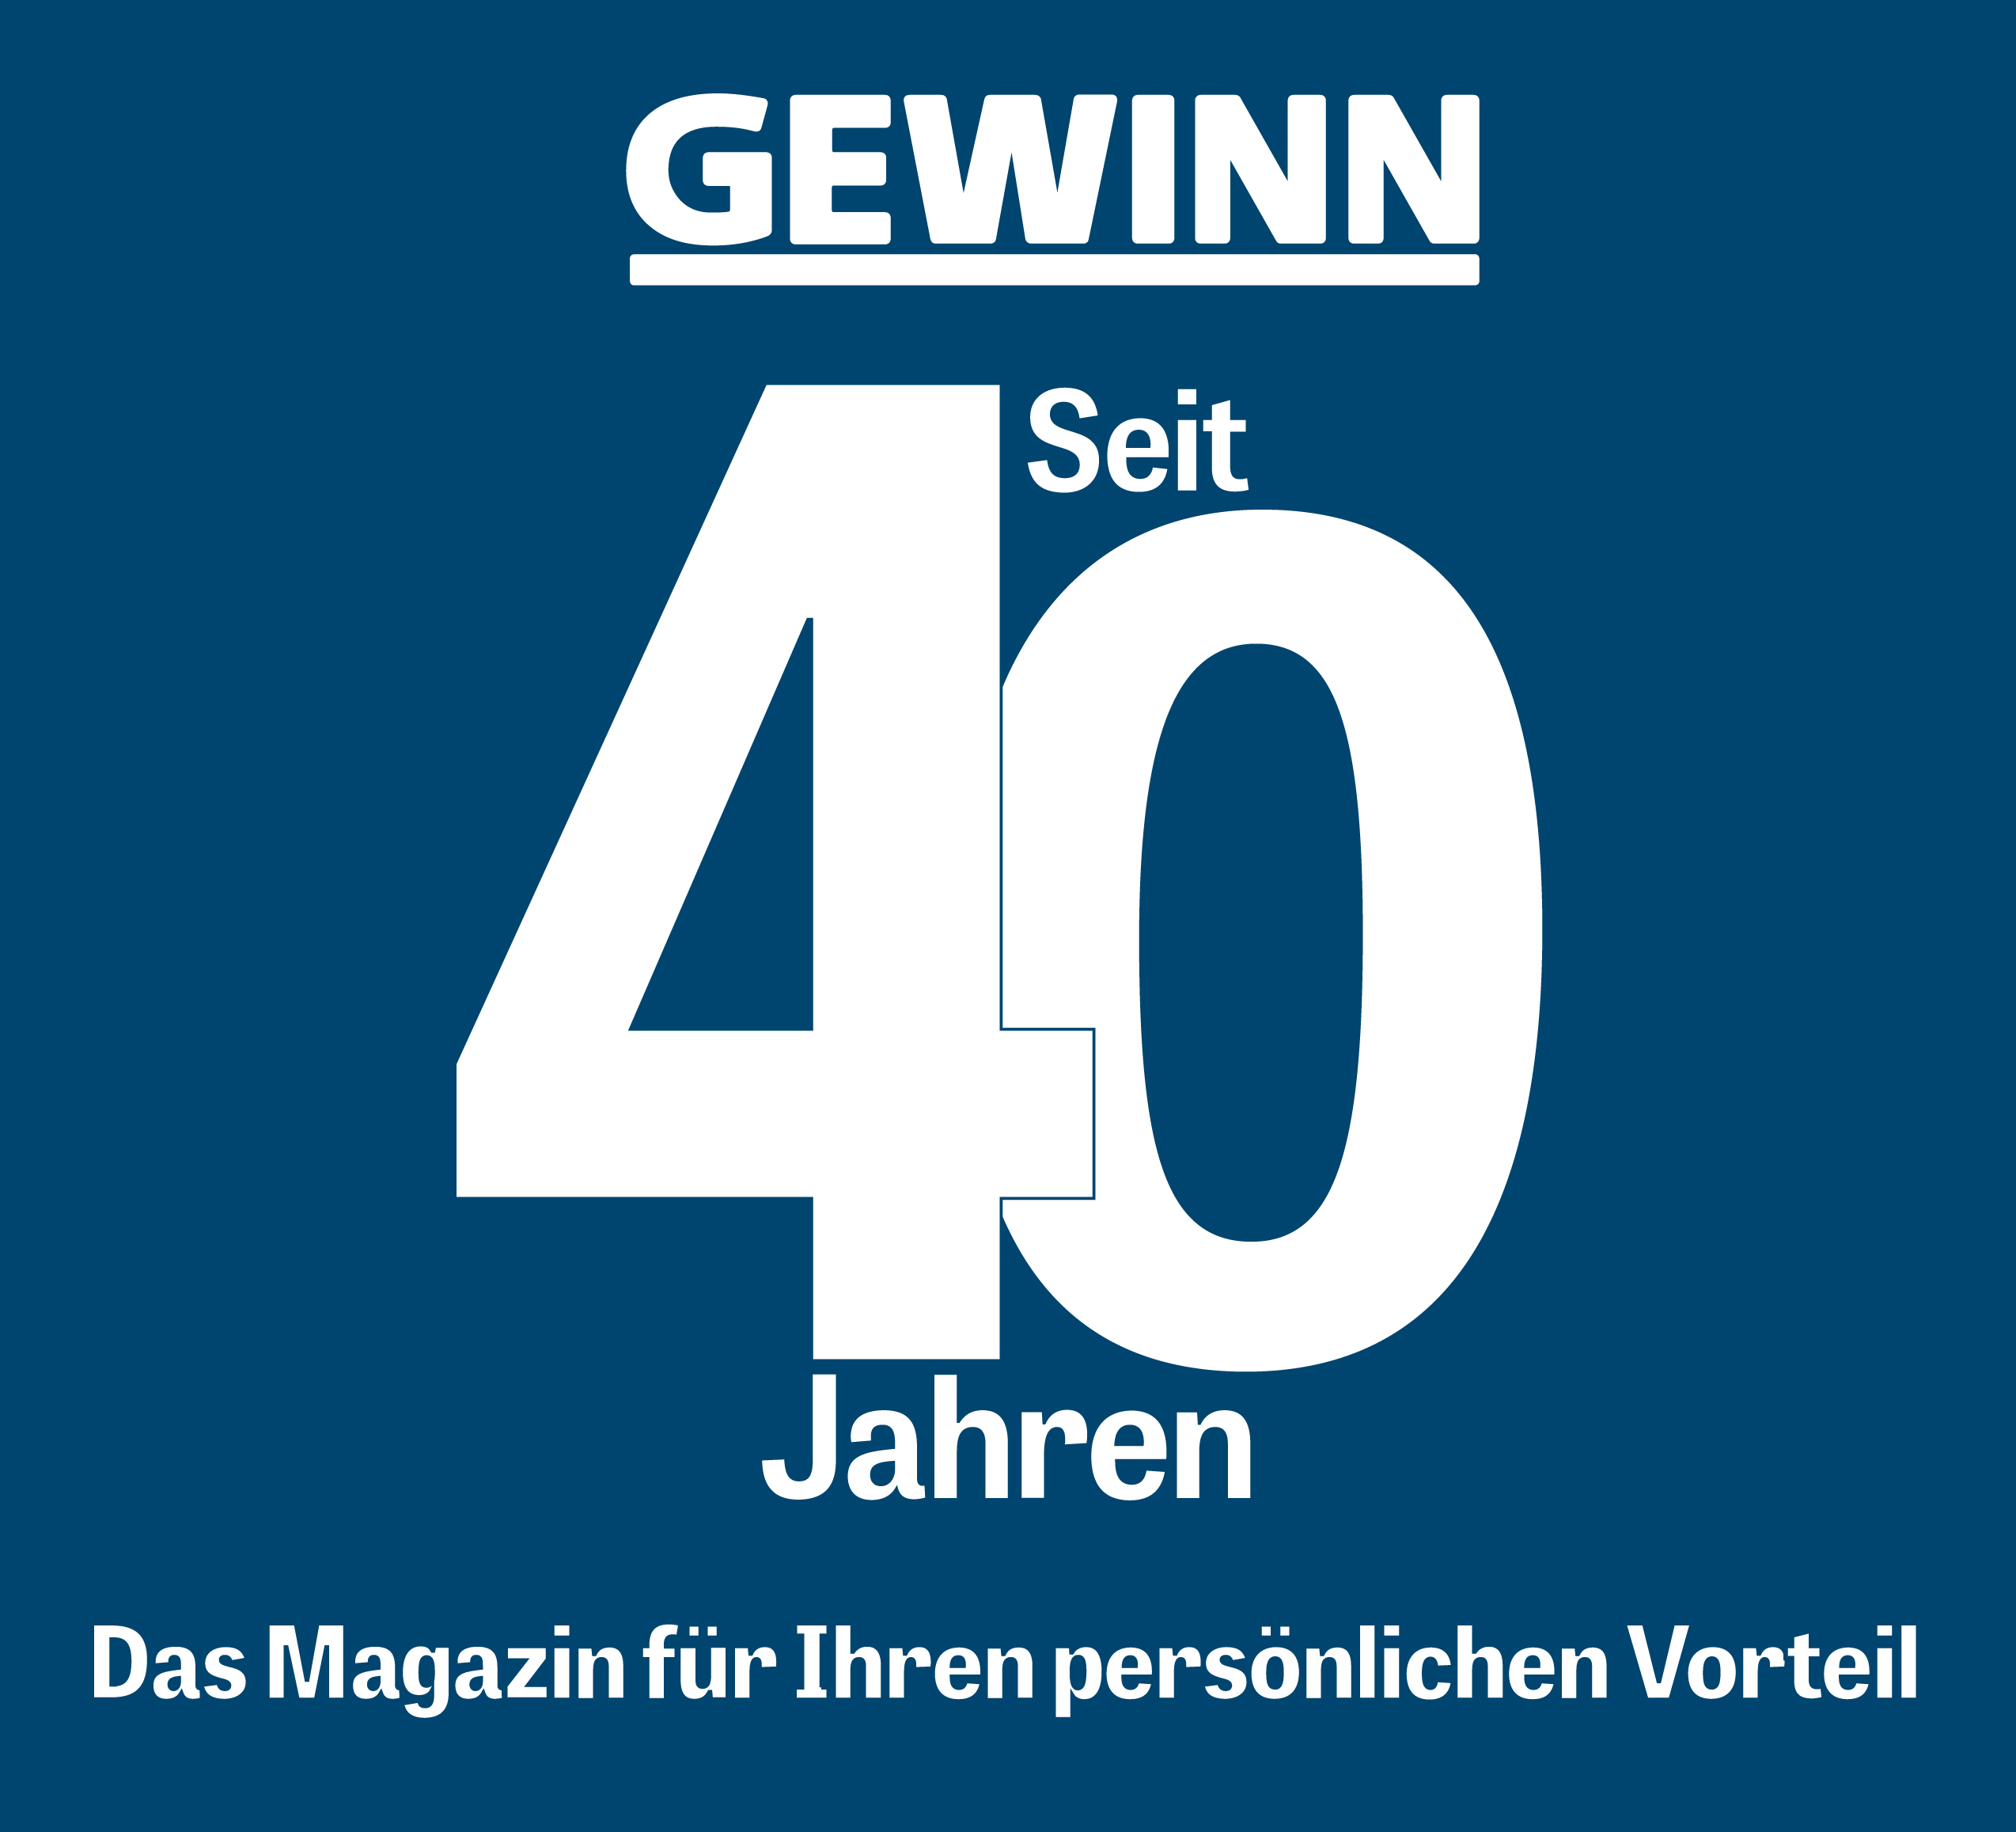 GEWINN - Seit 40 Jahren - Das Magazin für Ihren persönlichen Vorteil